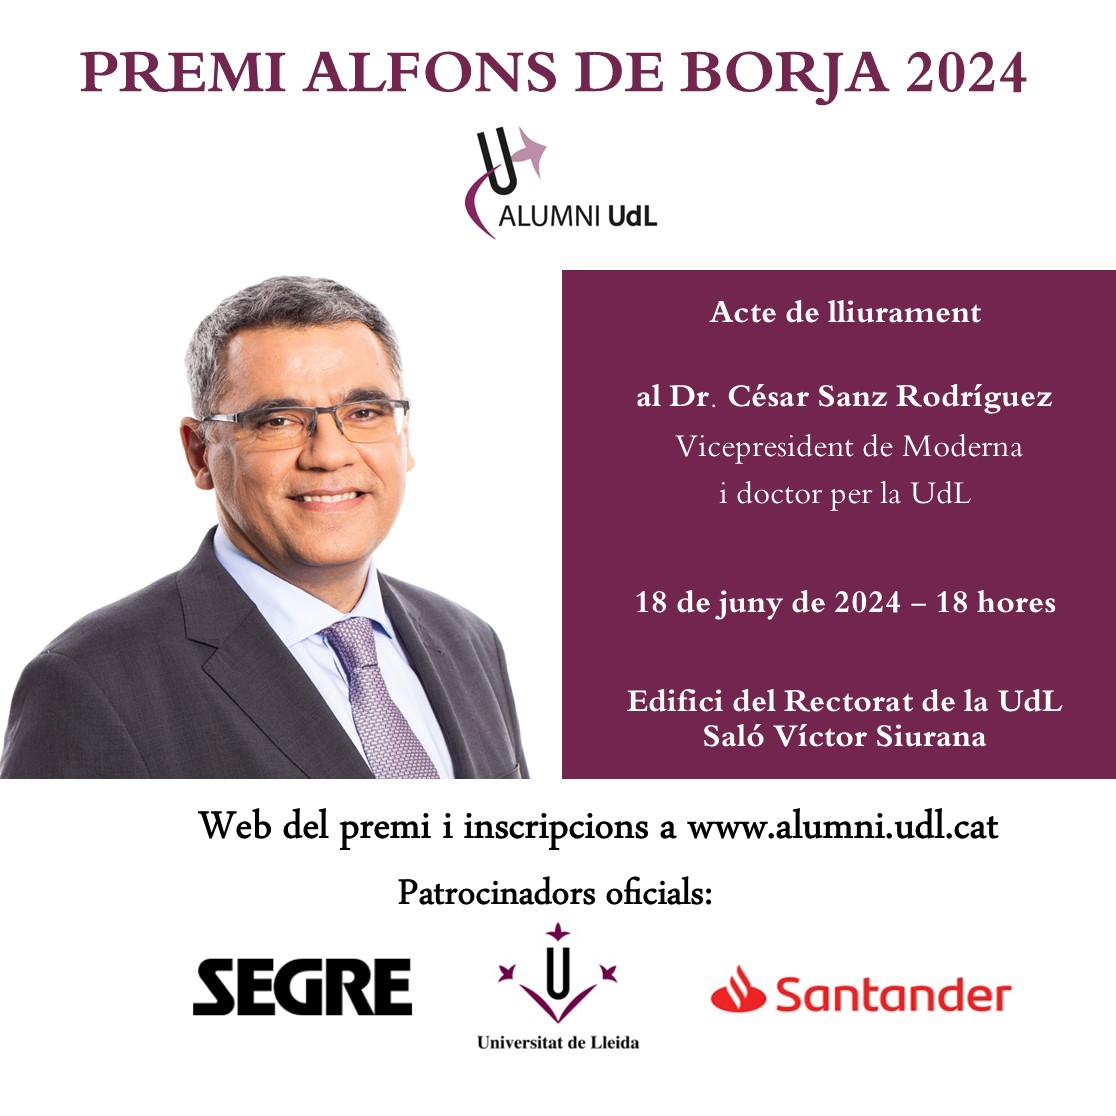 Permi Alfons de Borja d'Alumni UdL 2024